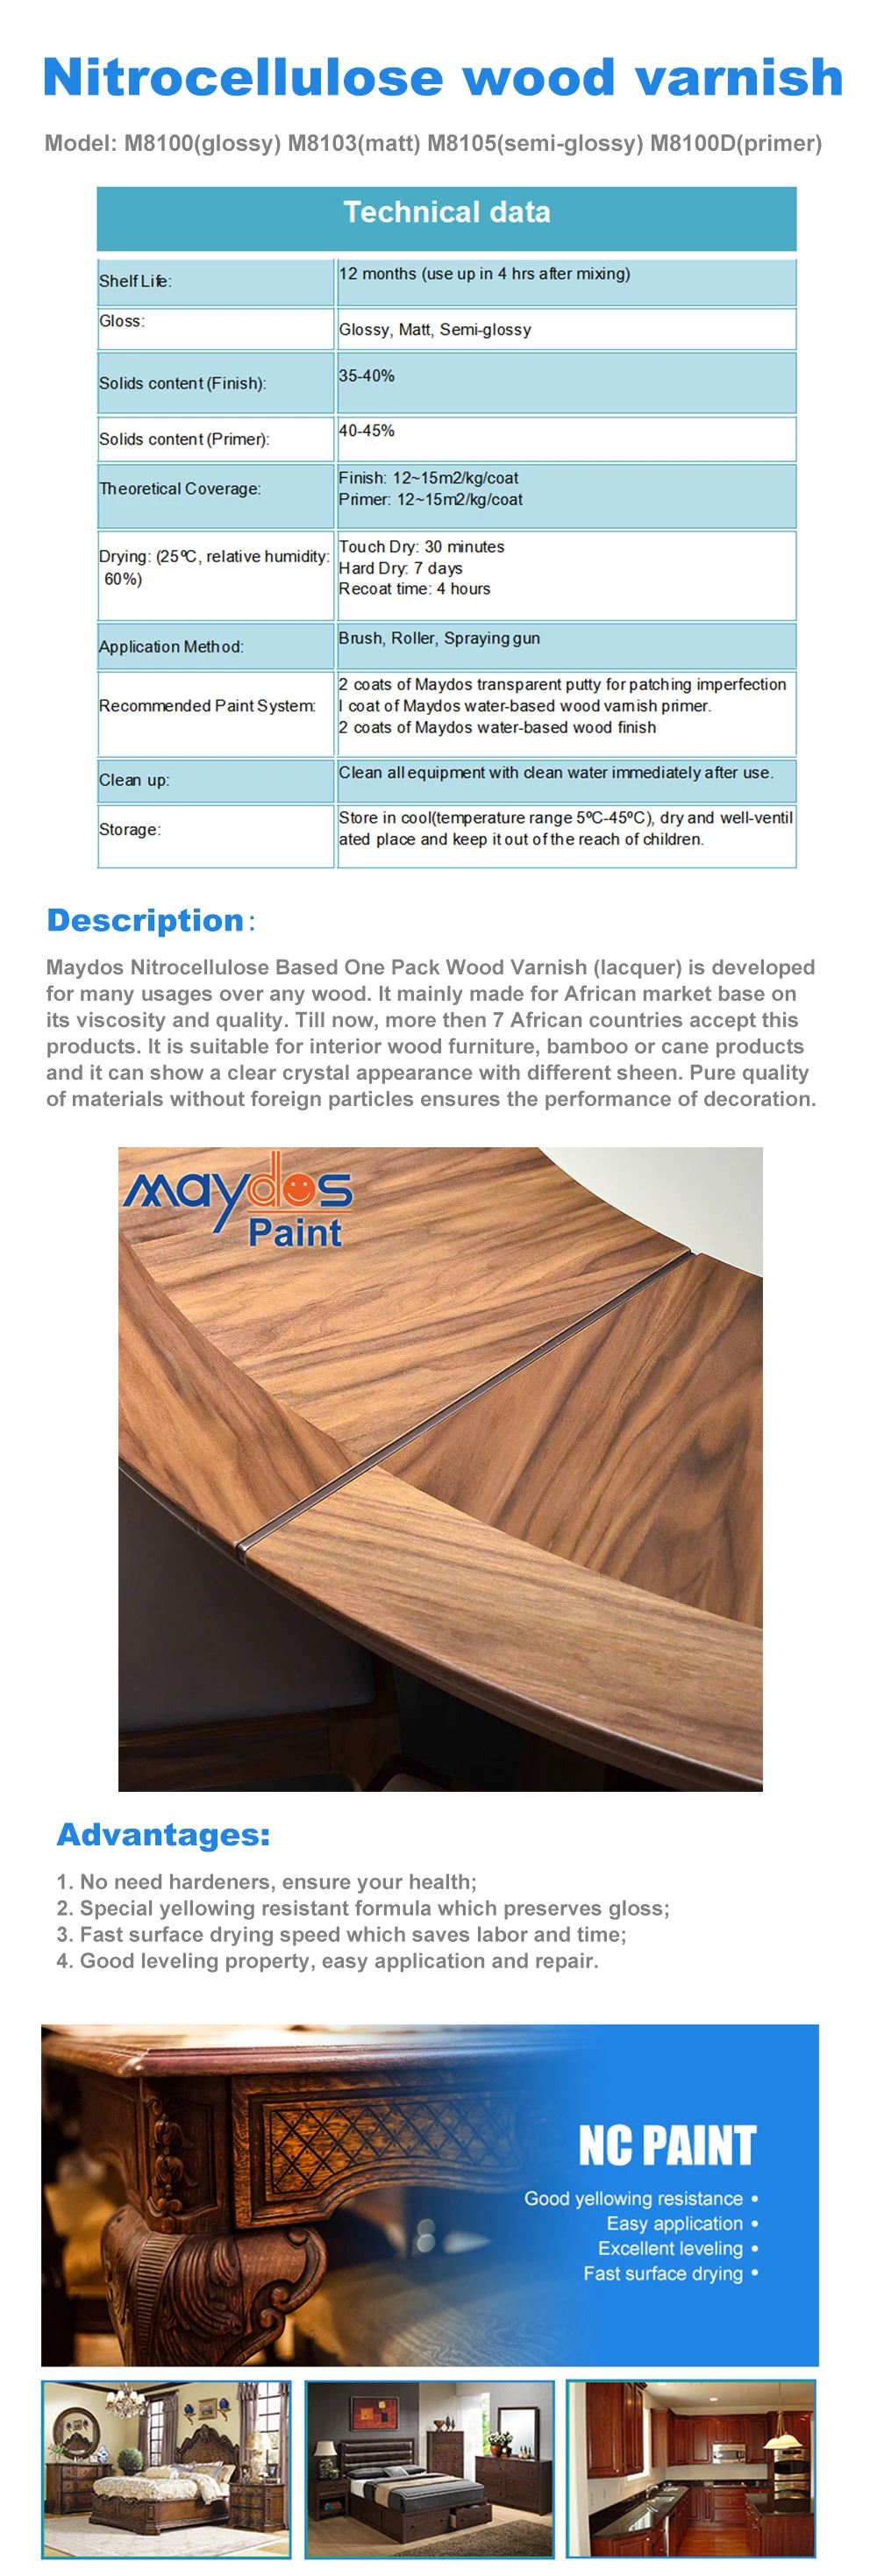 Nitrocellulose Wood Varnish/Wood Paint/Wood Coating/Paint/Coating (M8100 M8103 M8105)